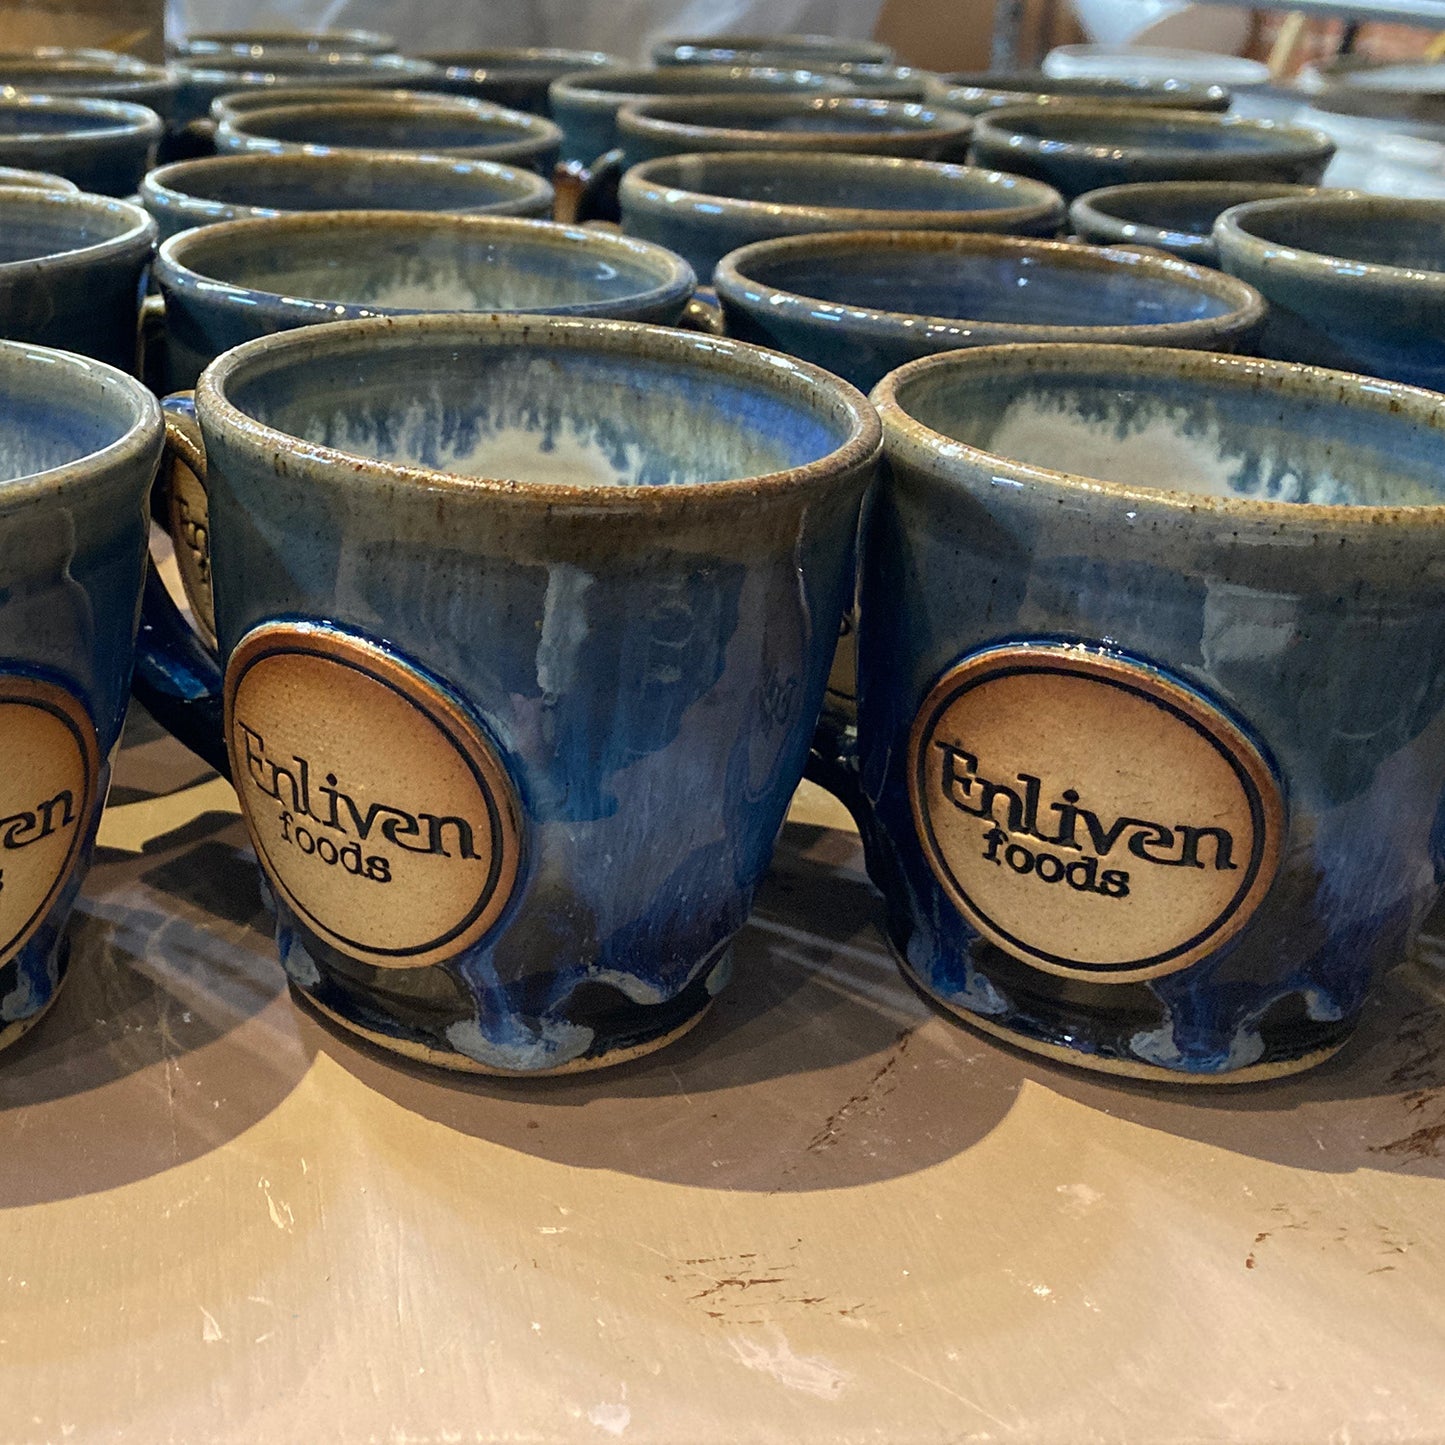 Artisanal, Hand-made Mugs